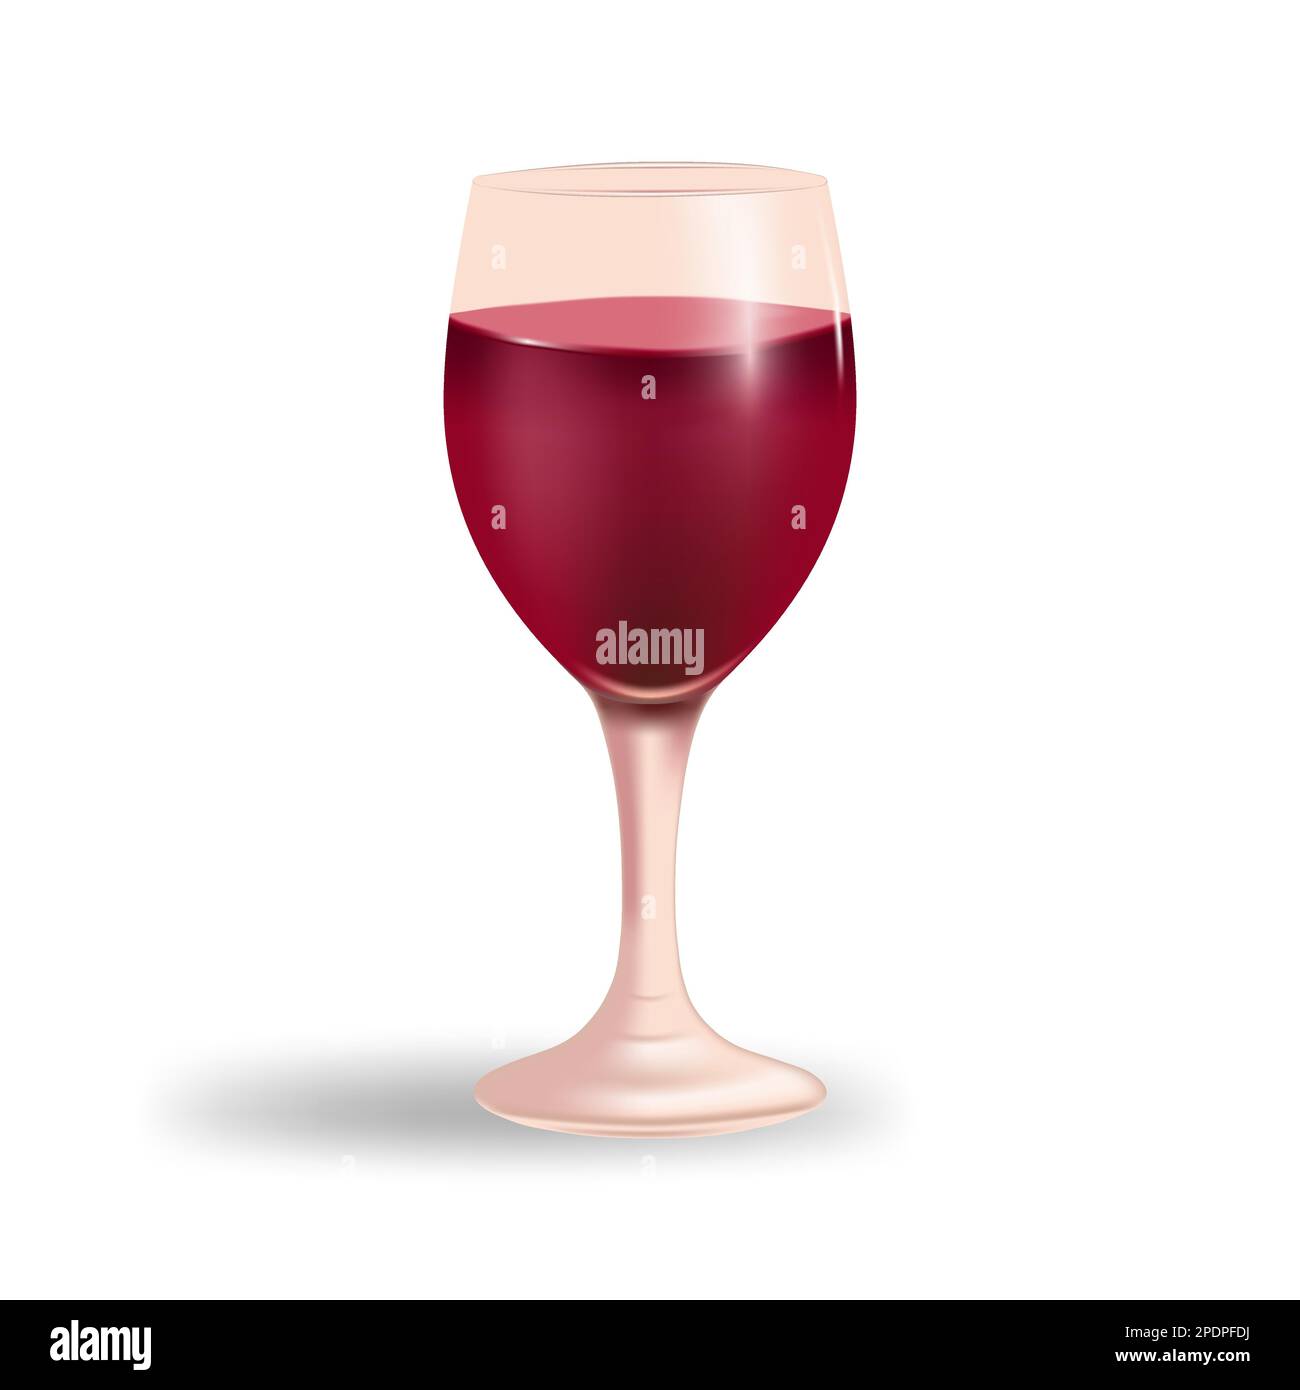 Élégant verre à vin rempli de vin rouge sur un fond blanc propre. Le design est parfait pour une utilisation dans les projets liés au vin, aux boissons, aux célébrations, Illustration de Vecteur